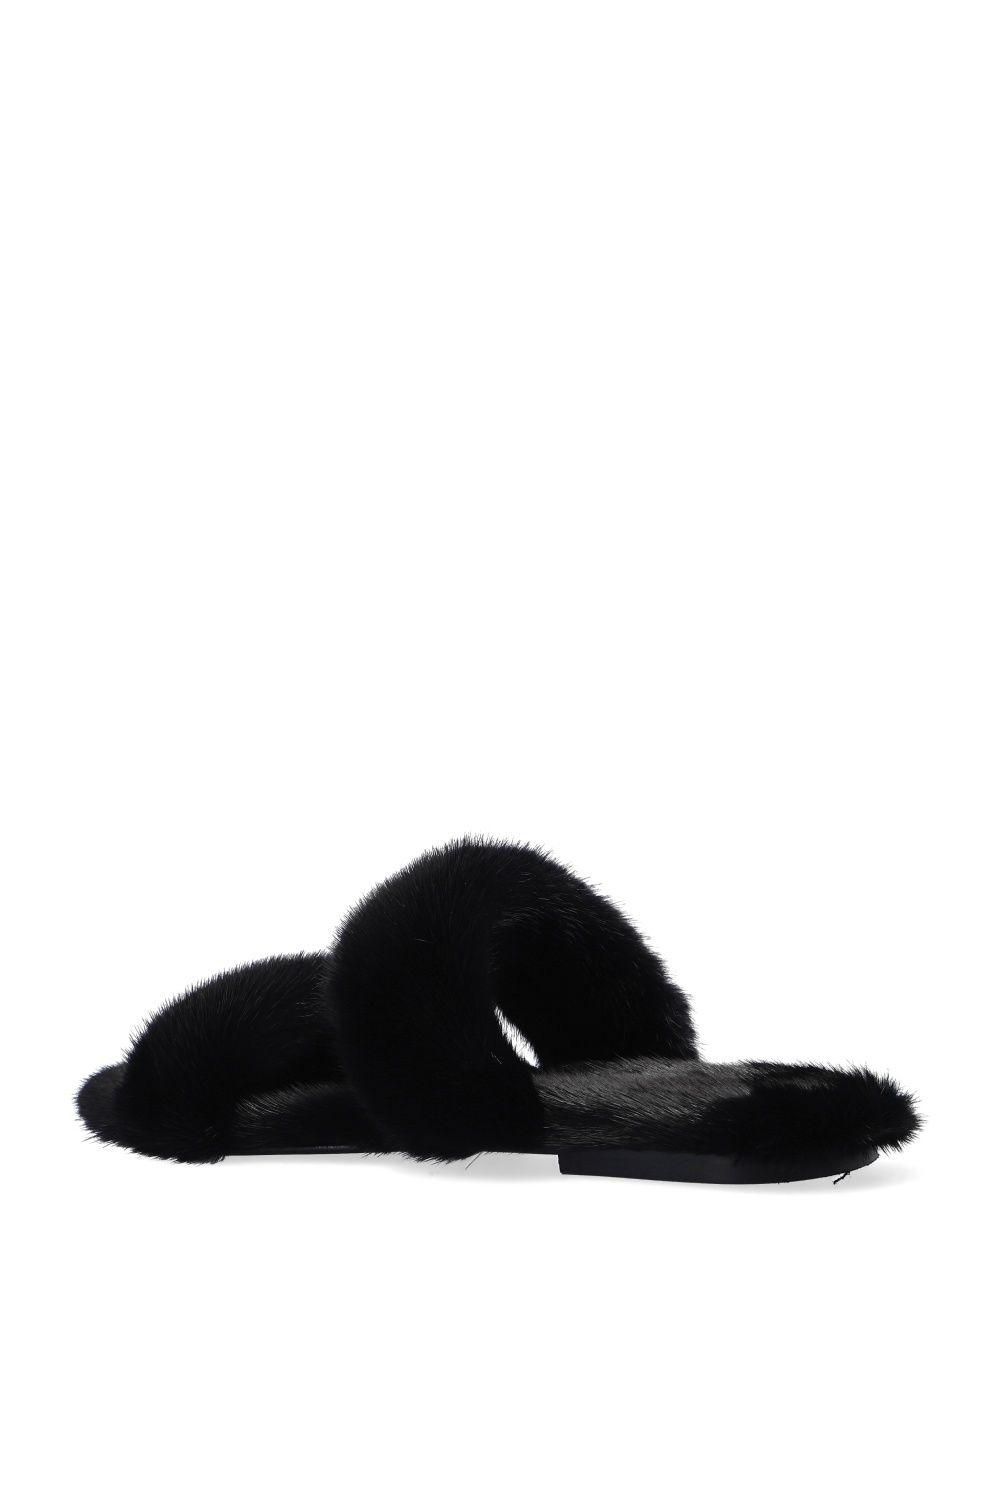 Yves Saint Laurent, Shoes, Saint Laurent Nero Mink Fur Slides Black  Sandals